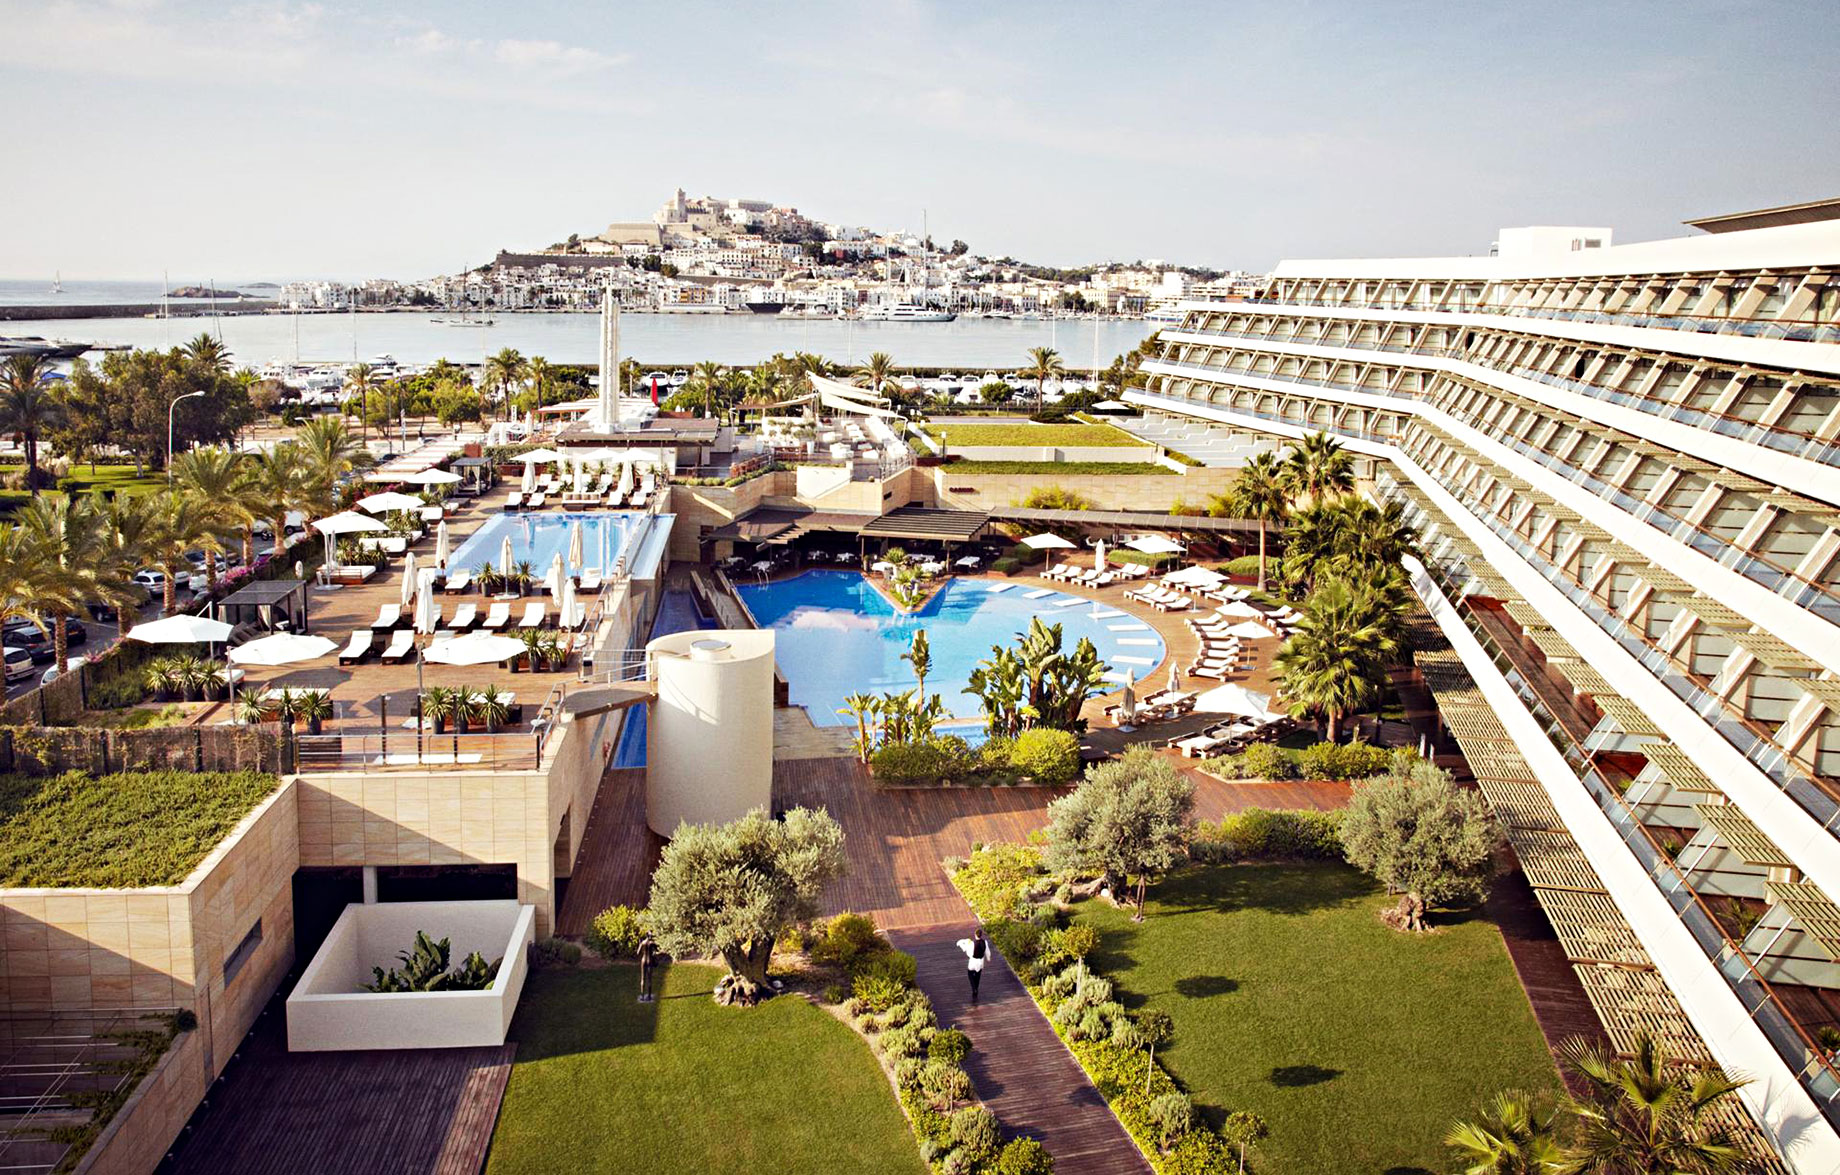 Ibiza Gran Hotel Casino - Ibiza, Balearic Islands,-Spain